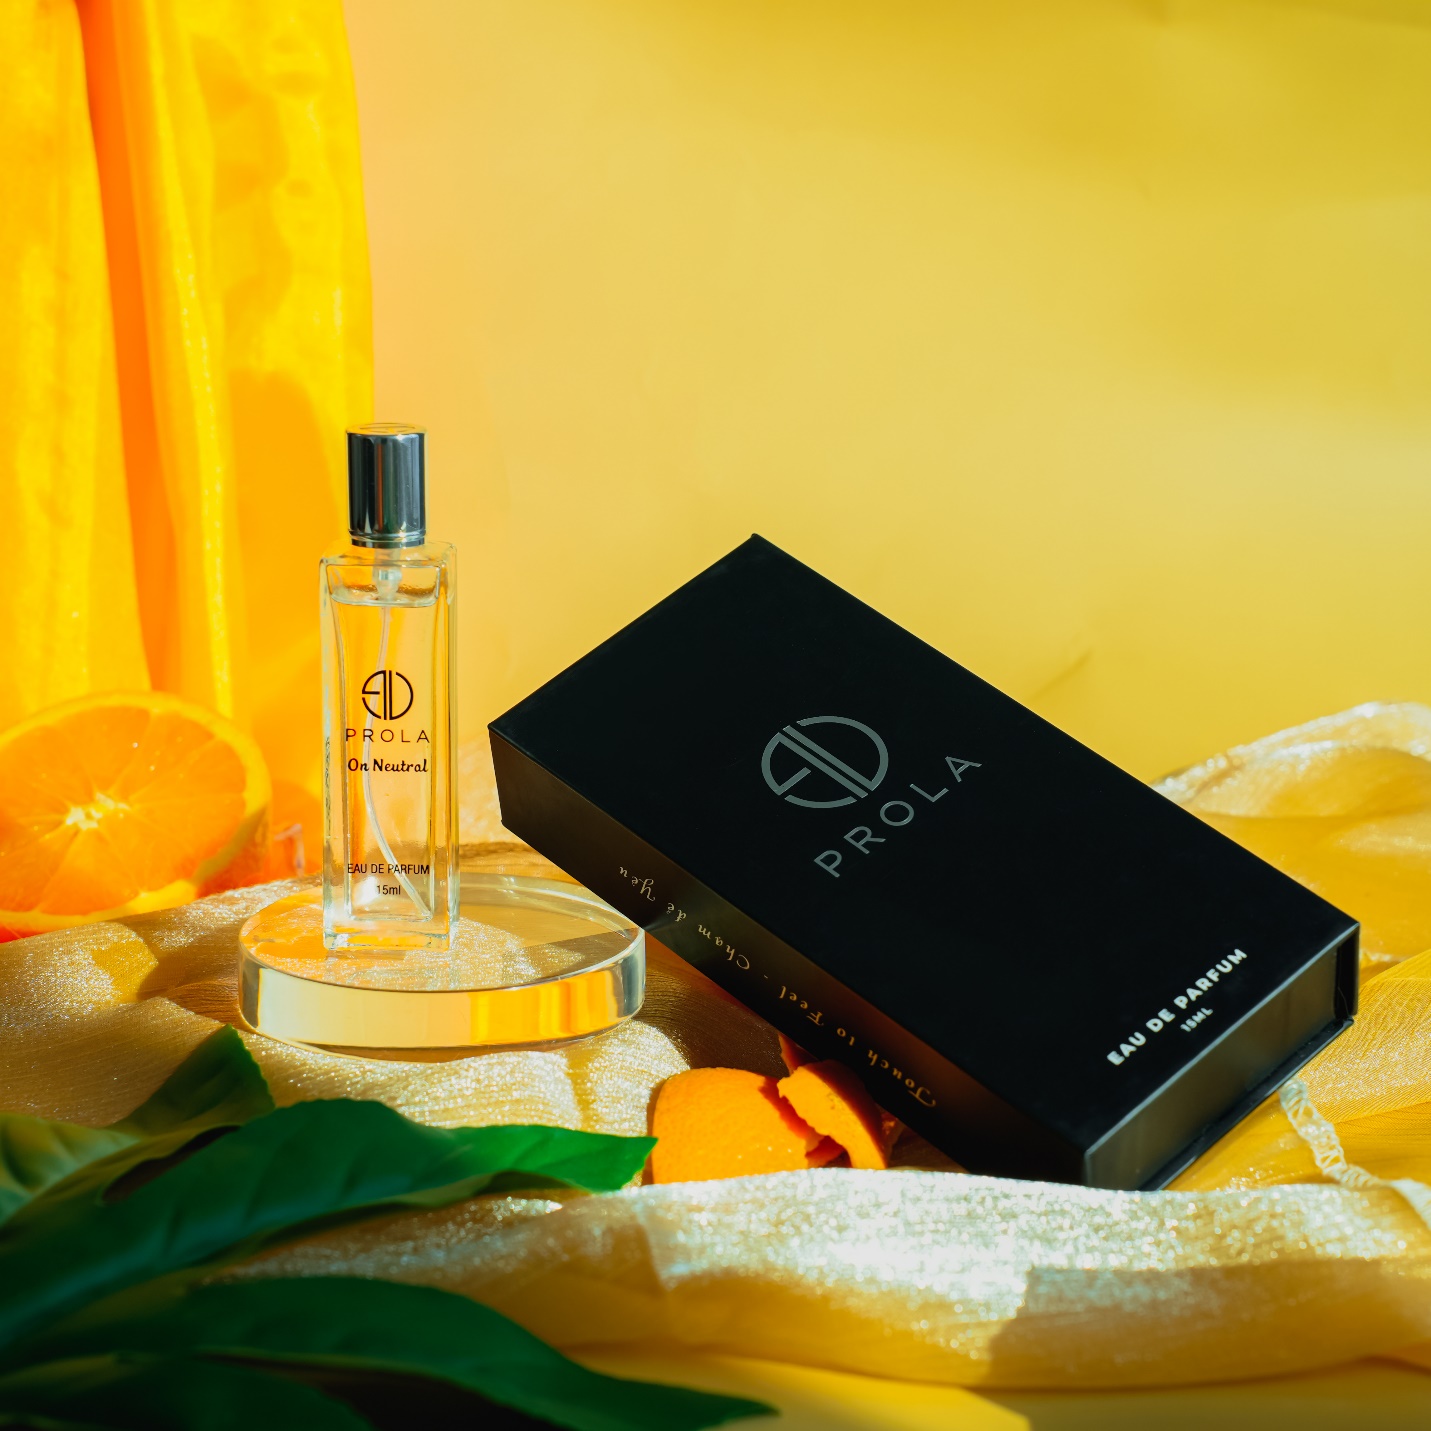 Cùng nước hoa Prola Parfum tạo ra những nốt hương riêng biệt - 5